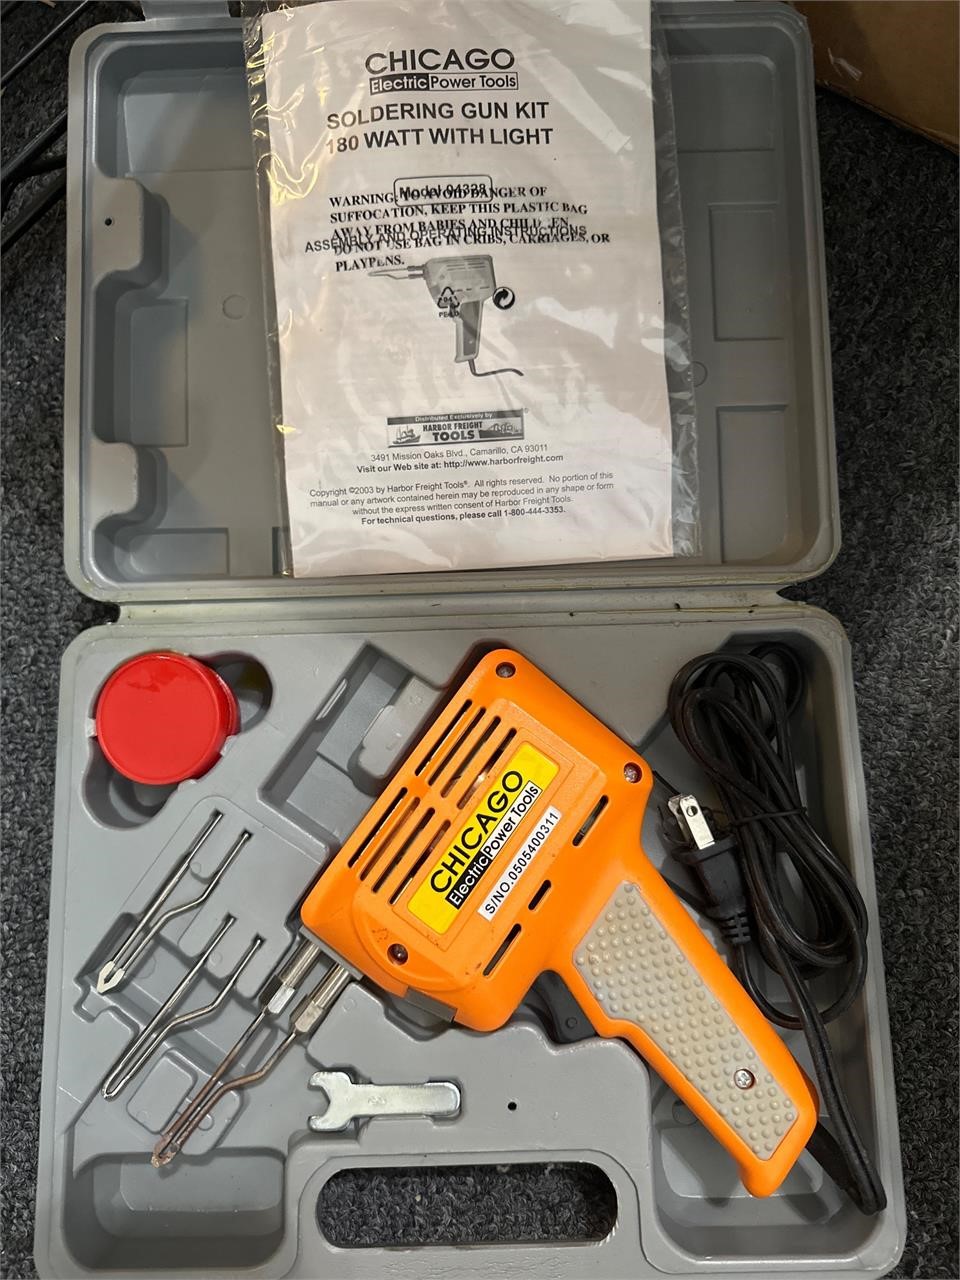 Chicago soldering gun kit